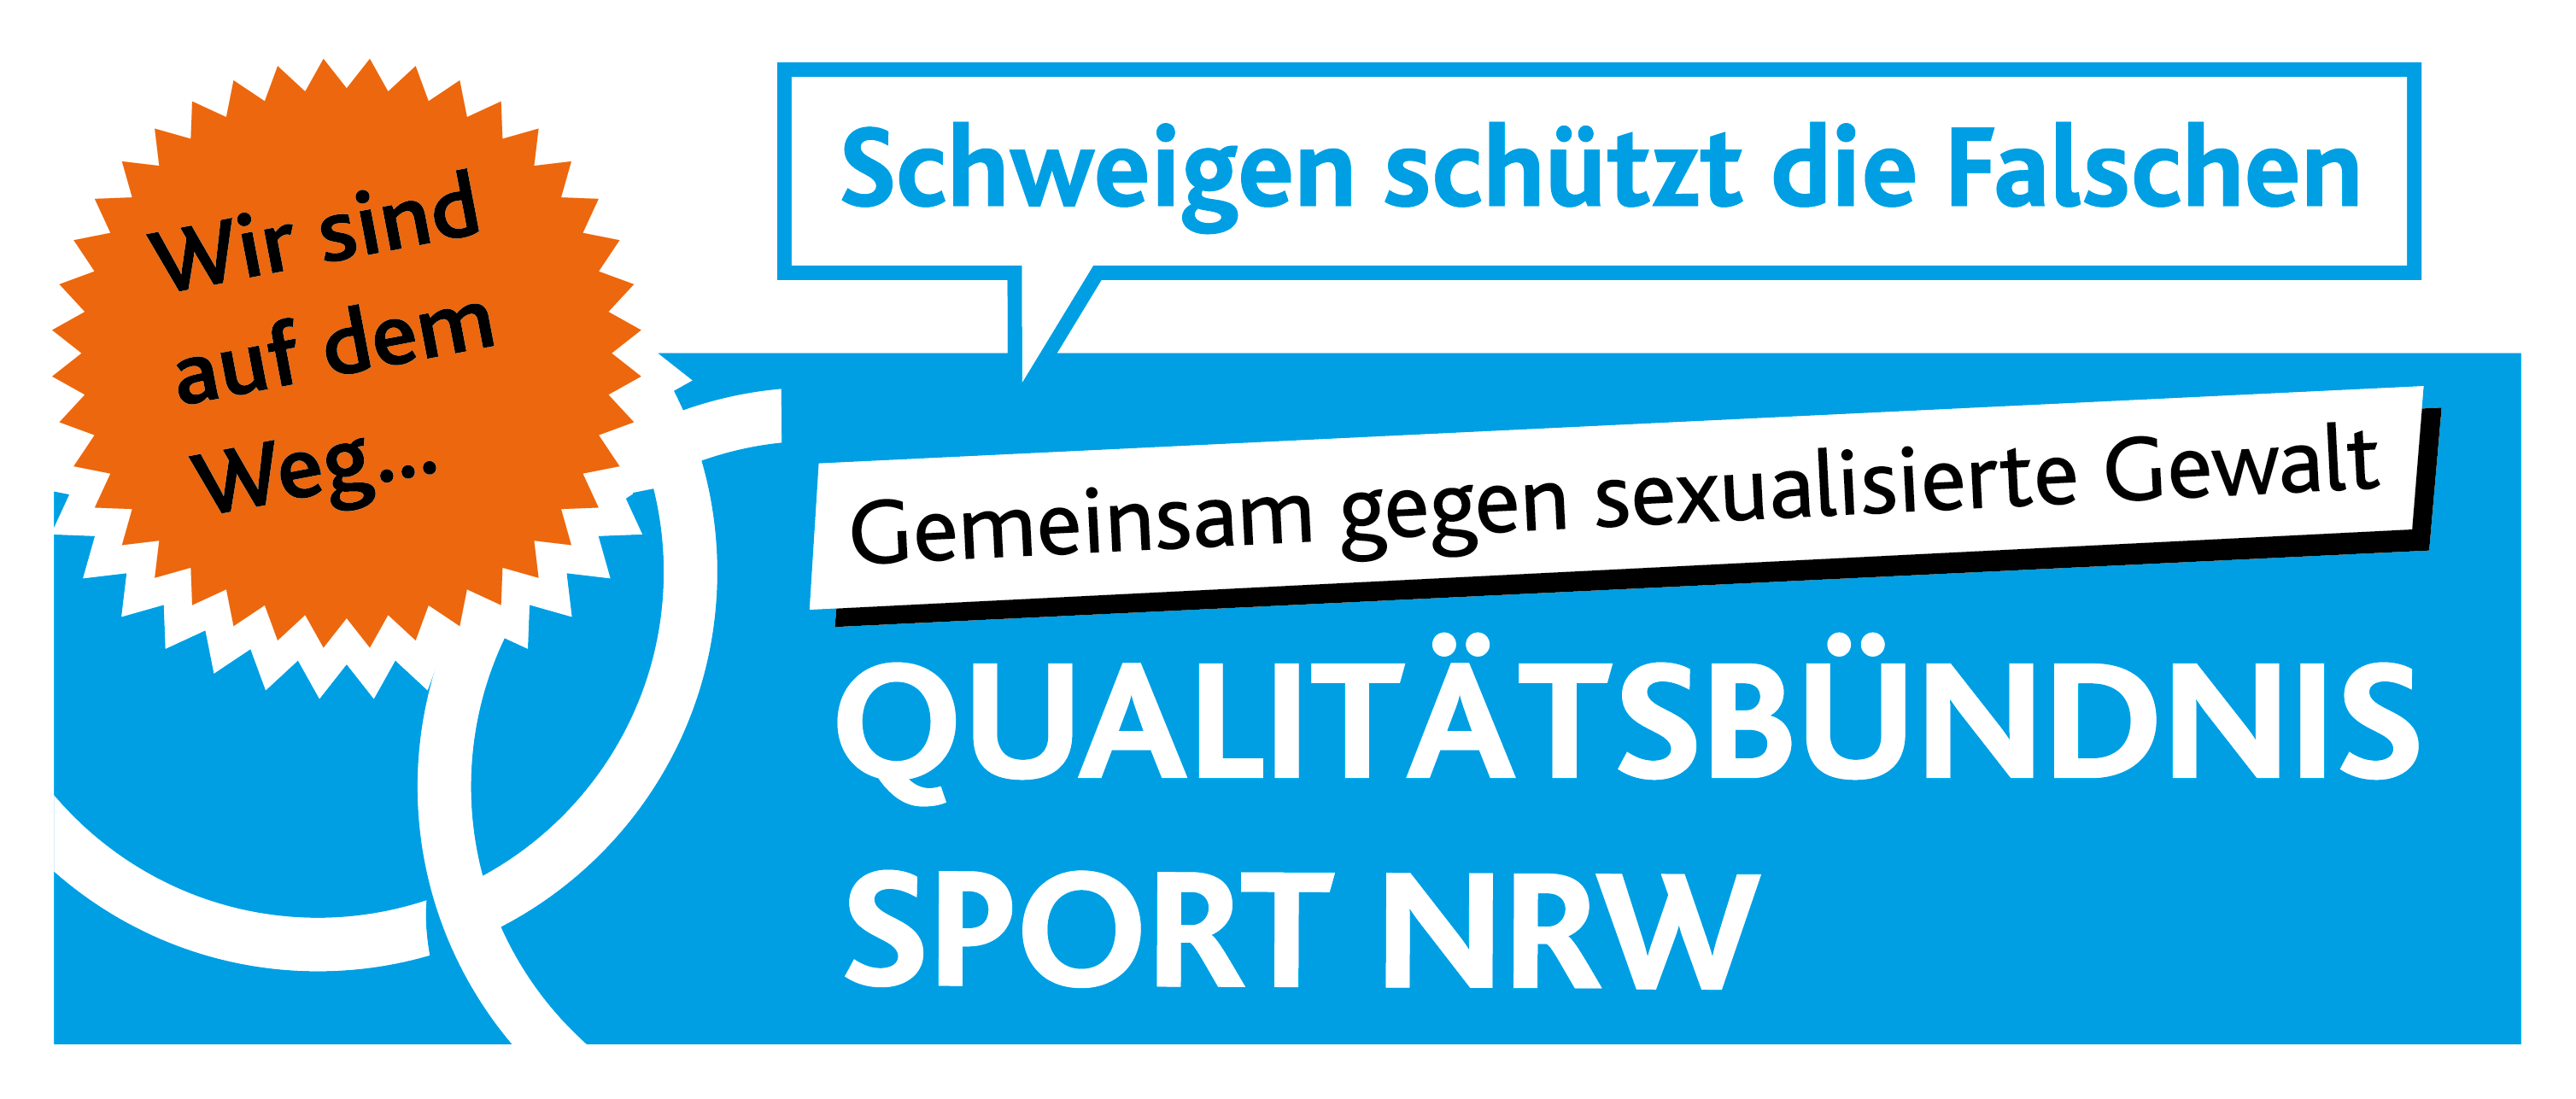 Gemeinsam gegen sexualisierte Gewalt im Sport – Infoveranstaltung im Rahmen des 3. Festival der Radsportjugend